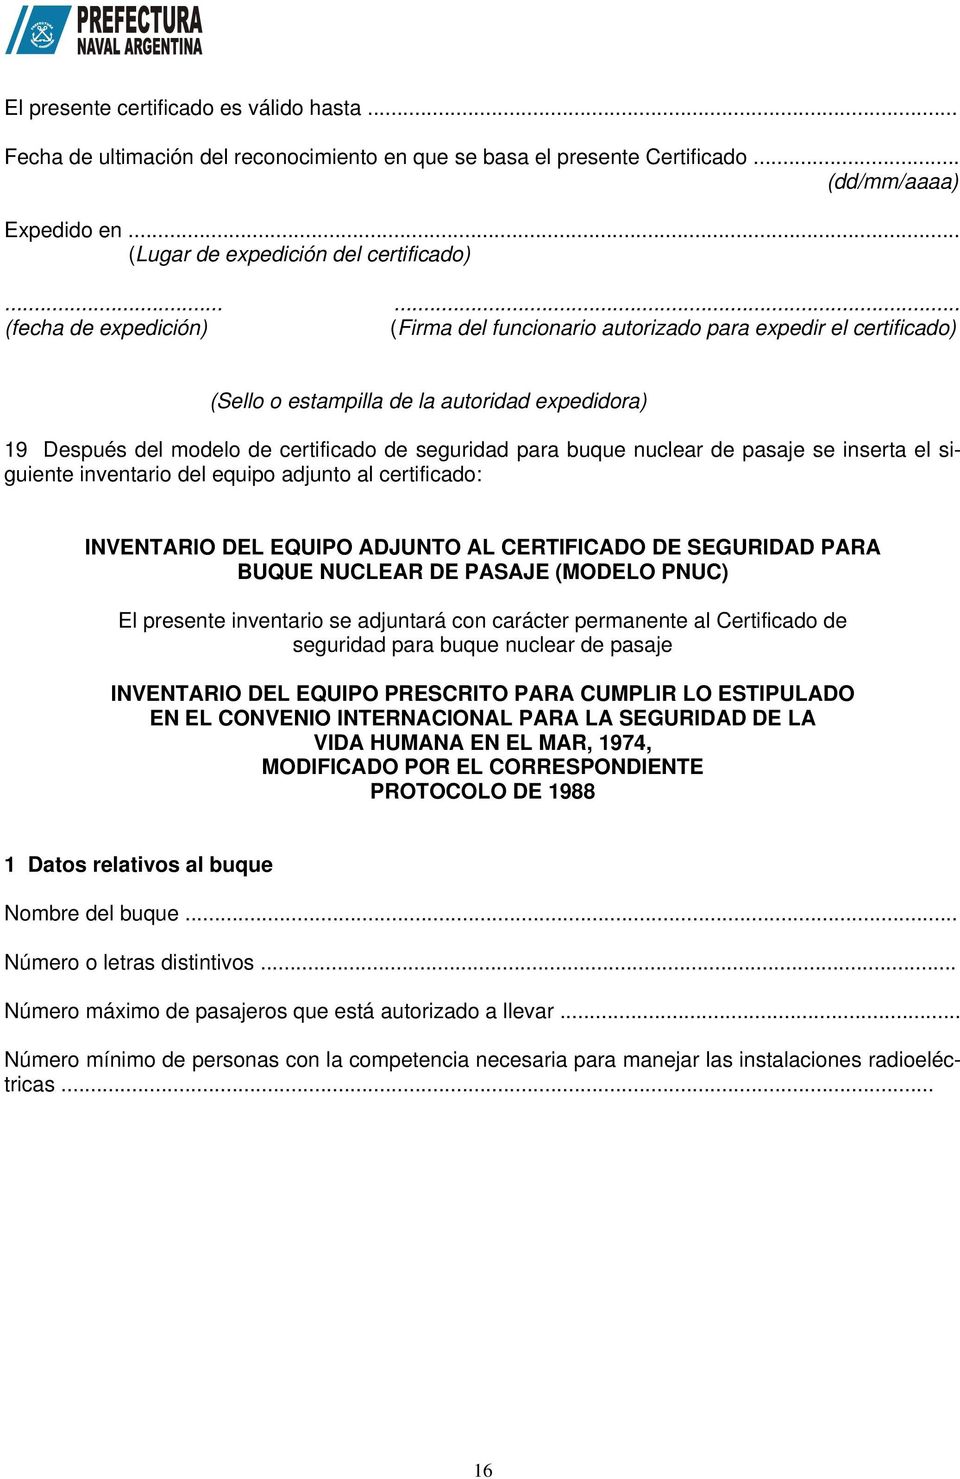 nuclear de pasaje se inserta el siguiente inventario del equipo adjunto al certificado: INVENTARIO DEL EQUIPO ADJUNTO AL CERTIFICADO DE SEGURIDAD PARA BUQUE NUCLEAR DE PASAJE (MODELO PNUC) El